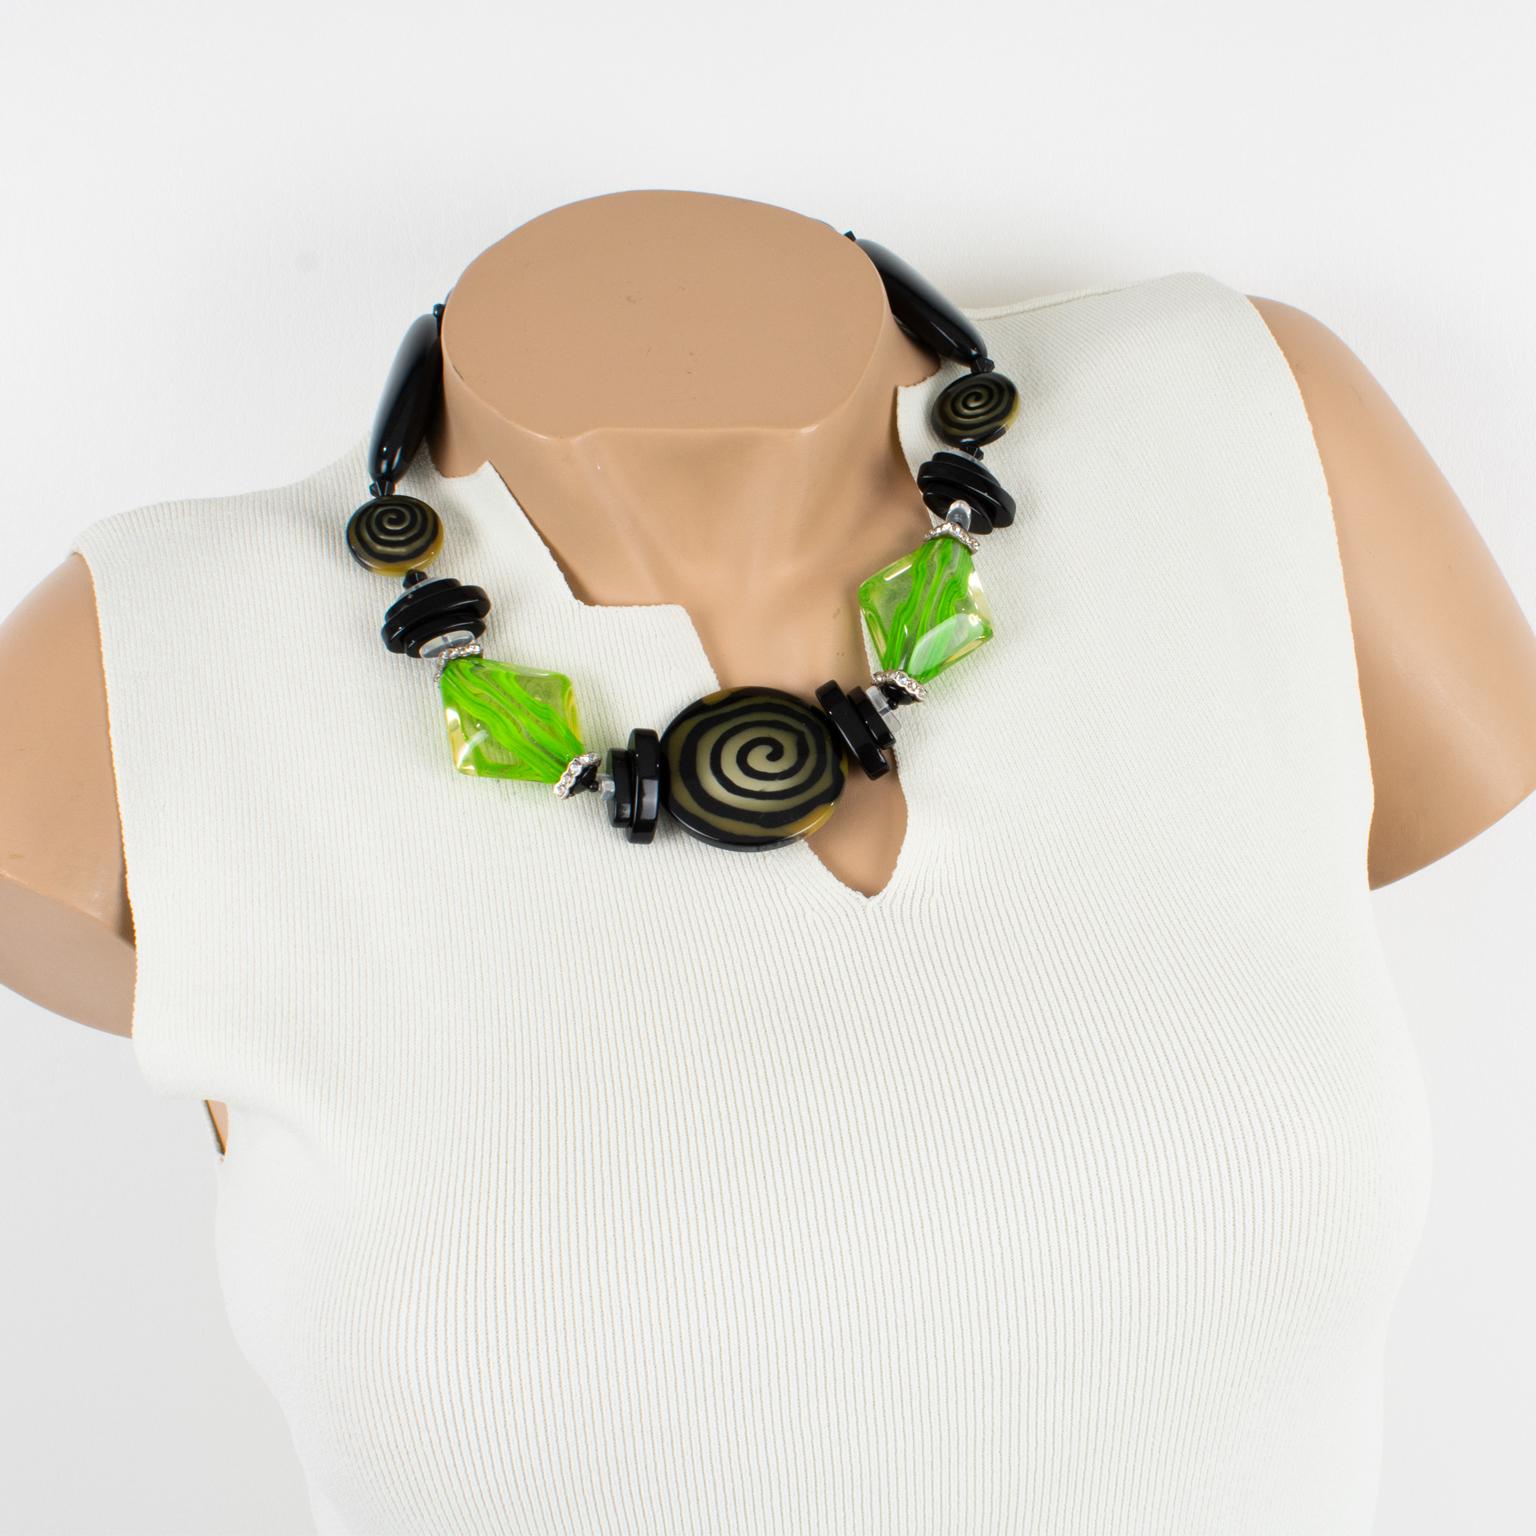 Elegantes Angela Caputi, in Italien hergestelltes Harz-Halsband. Diese Halskette arbeitet mit einem Schwarz-Grün-Kontrast und besteht aus klobigen, geschnitzten Kieselsteinperlen mit einer runden Perle in der Mitte, die ein spiralförmiges